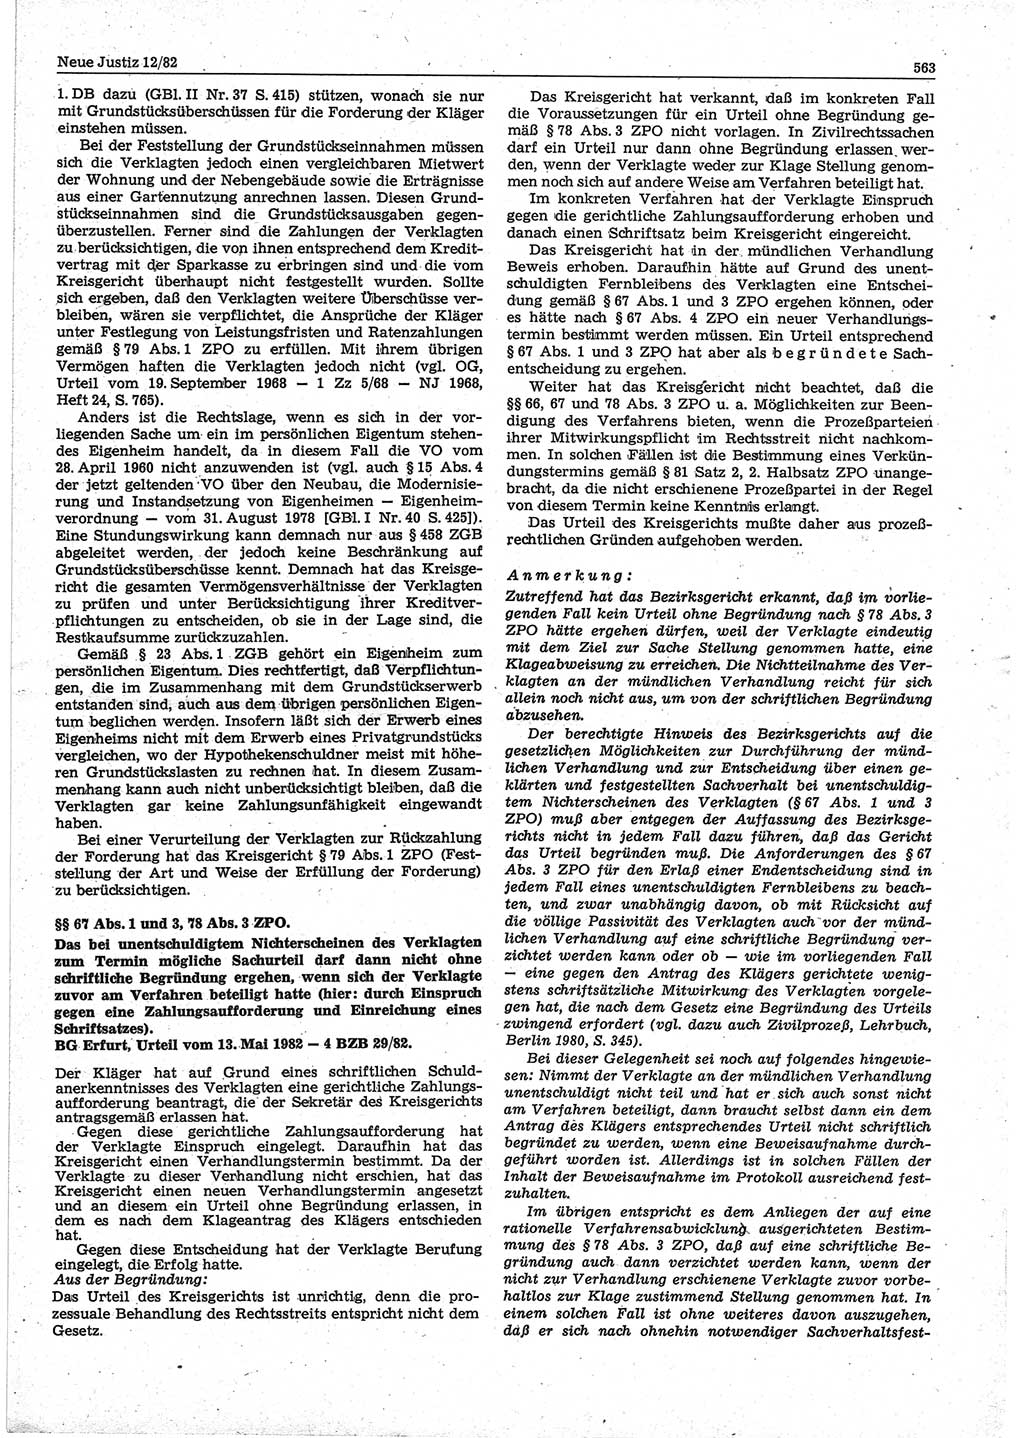 Neue Justiz (NJ), Zeitschrift für sozialistisches Recht und Gesetzlichkeit [Deutsche Demokratische Republik (DDR)], 36. Jahrgang 1982, Seite 563 (NJ DDR 1982, S. 563)